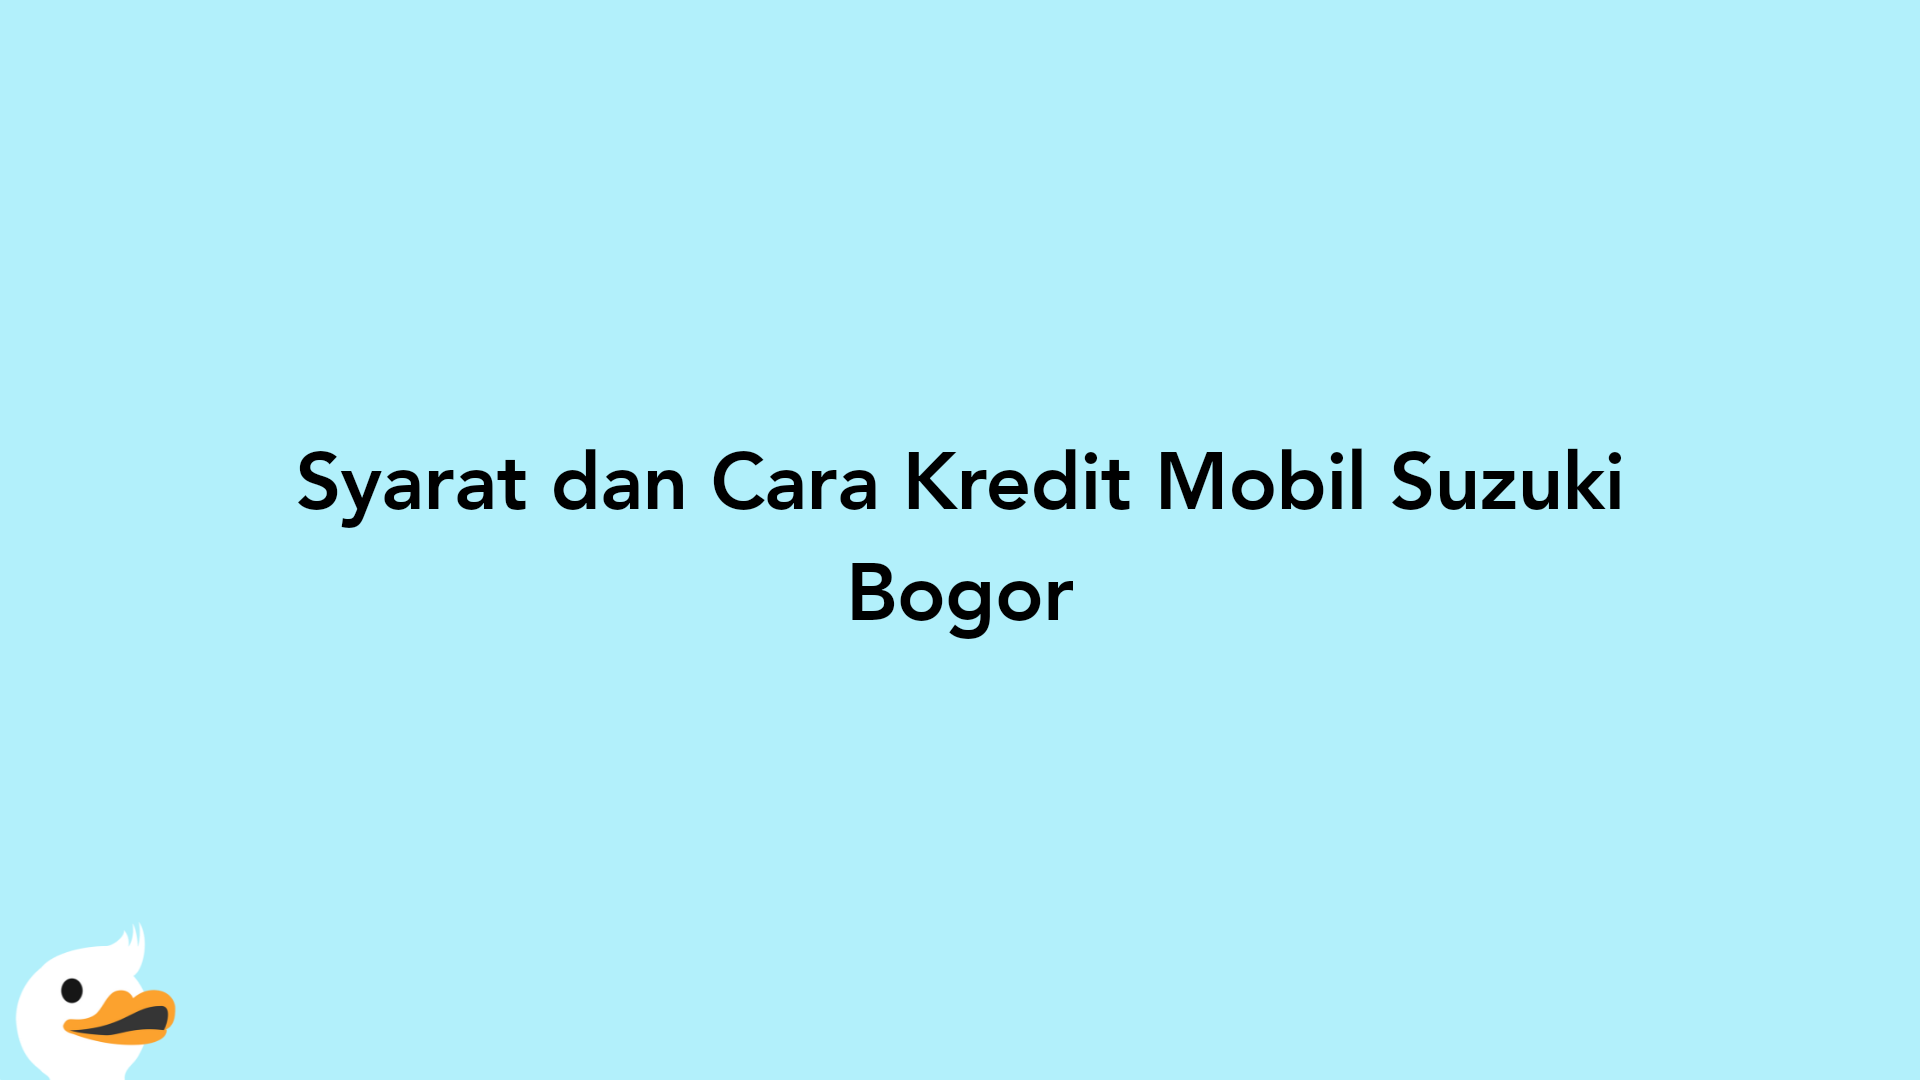 Syarat dan Cara Kredit Mobil Suzuki Bogor